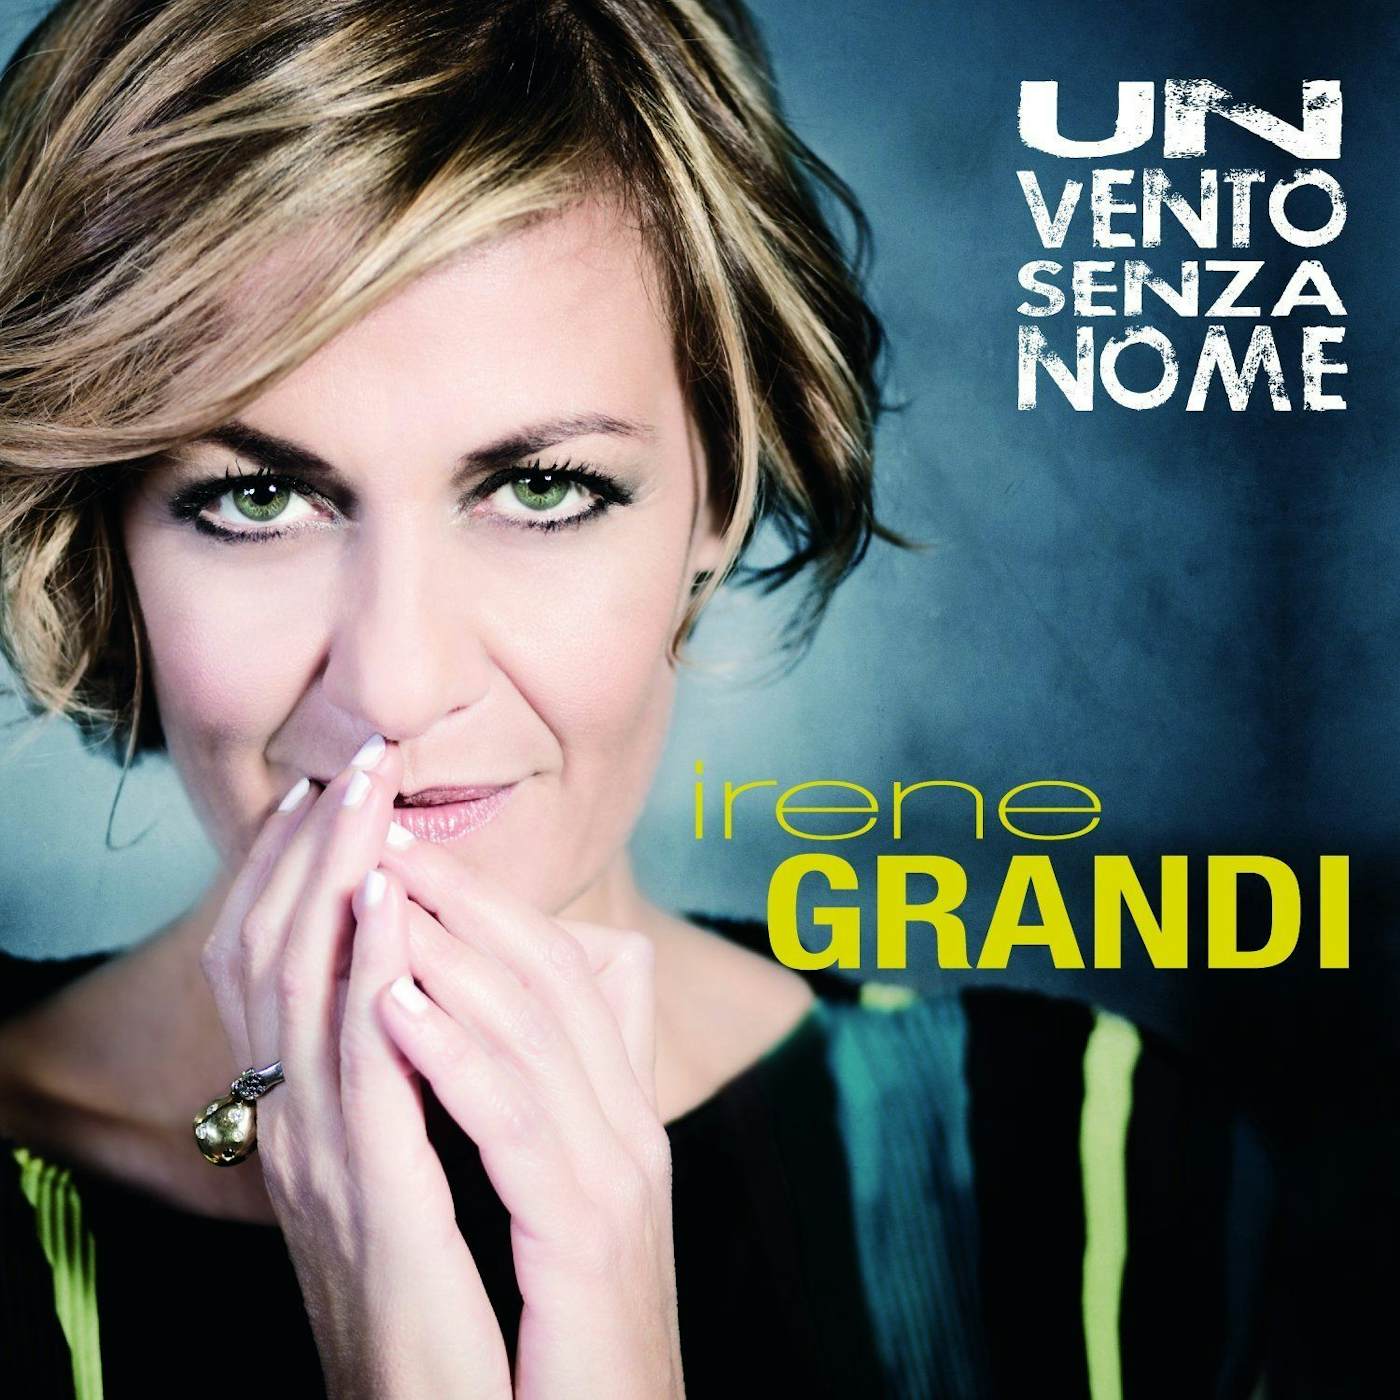 Irene Grandi UN VENTO SENZA NOME Vinyl Record